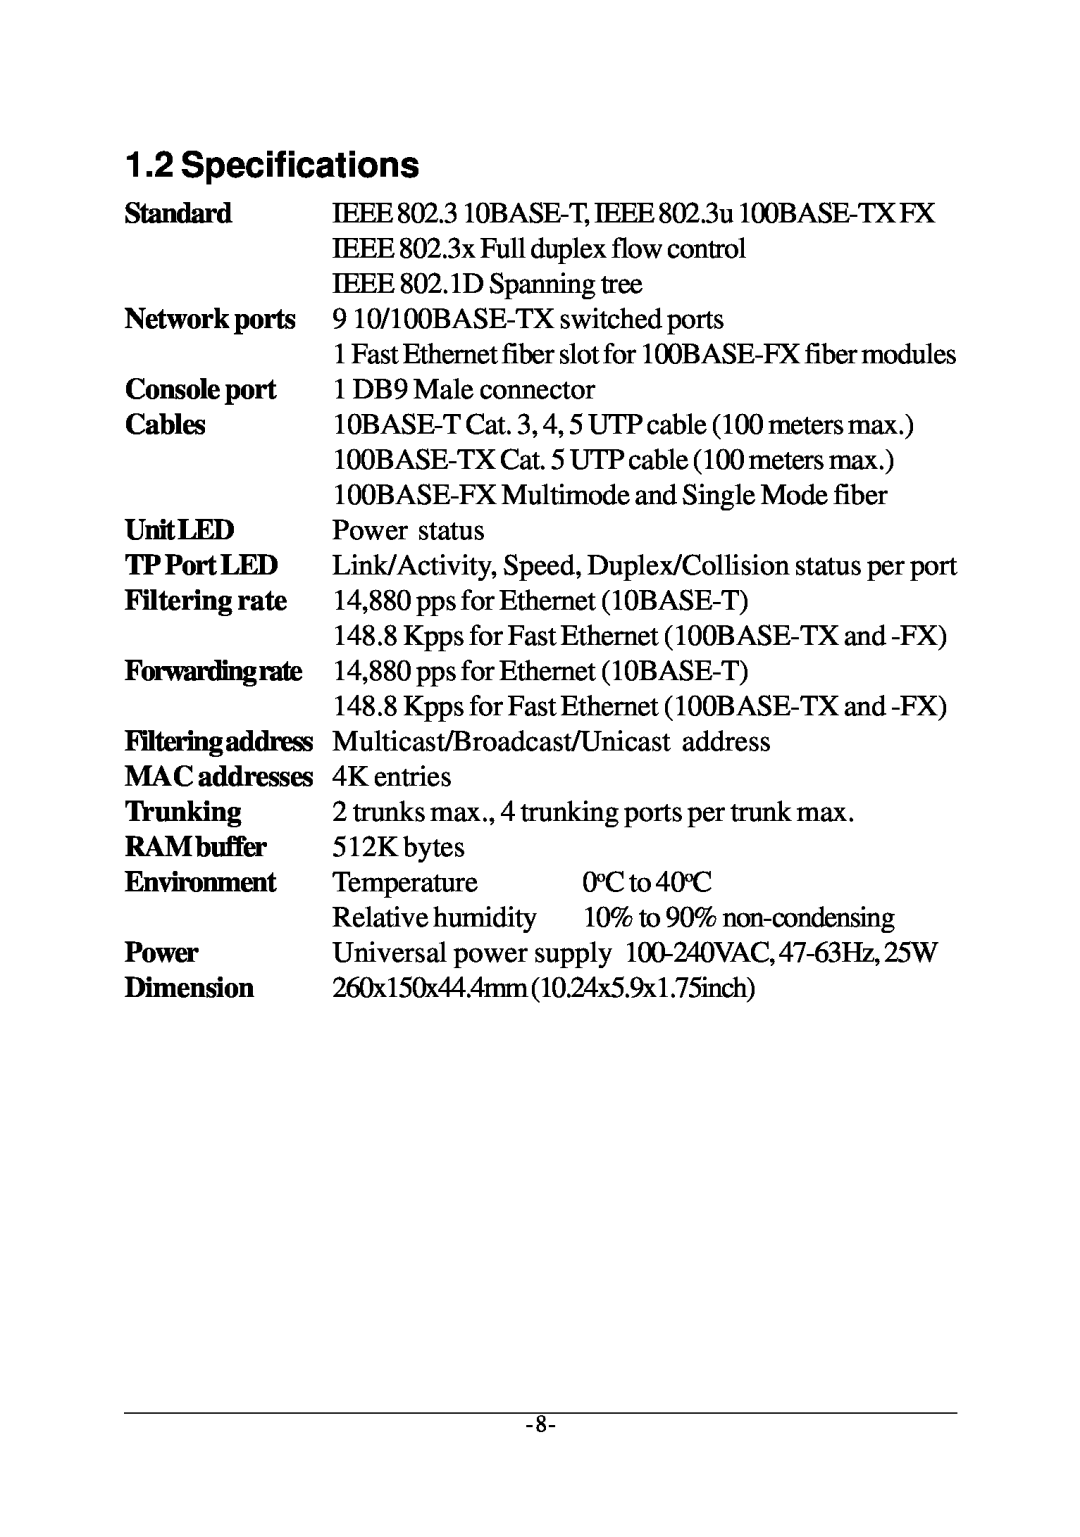 Xerox KS-801 operation manual Specifications 